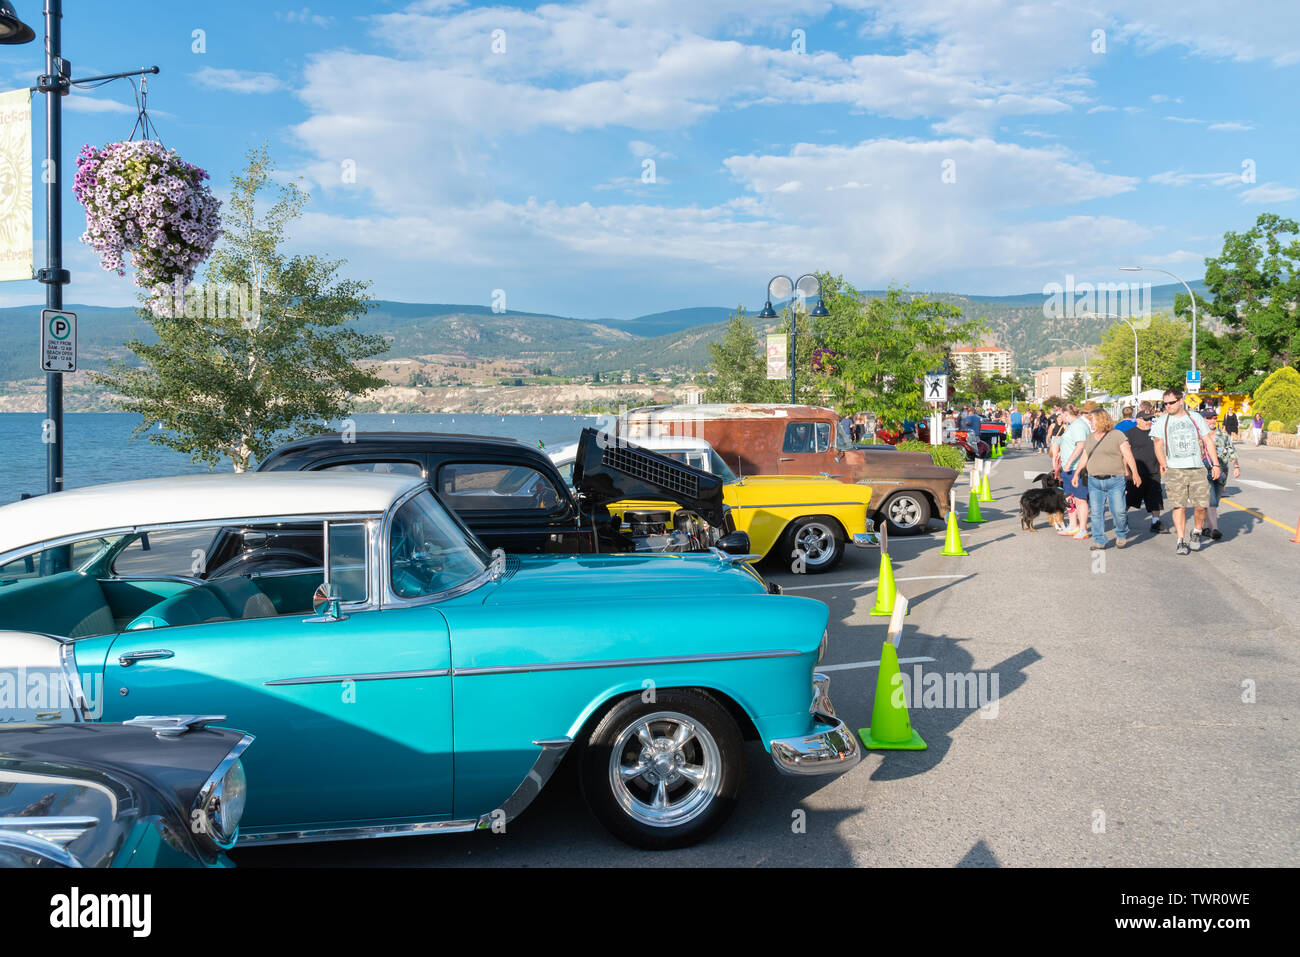 La gente mira a los coches en la pantalla de la playa de la ciudad de Durazno crucero, uno de los mayores espectáculos de coche en América del Norte Foto de stock